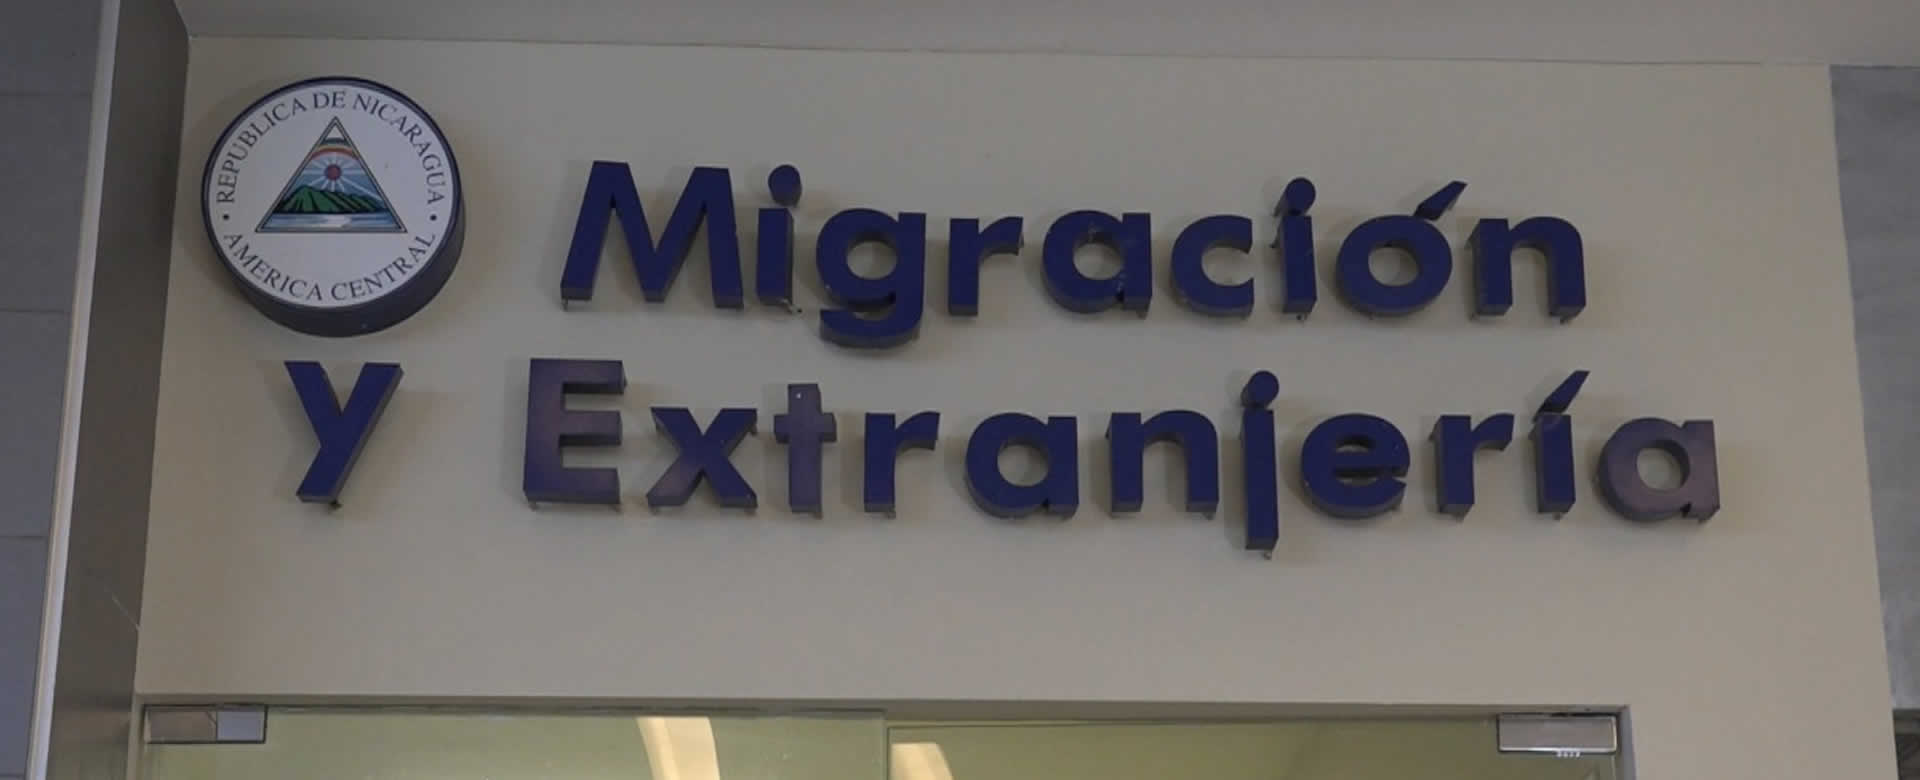 Oficina de migración y extranjería de Metrocentro atiende con normalidad